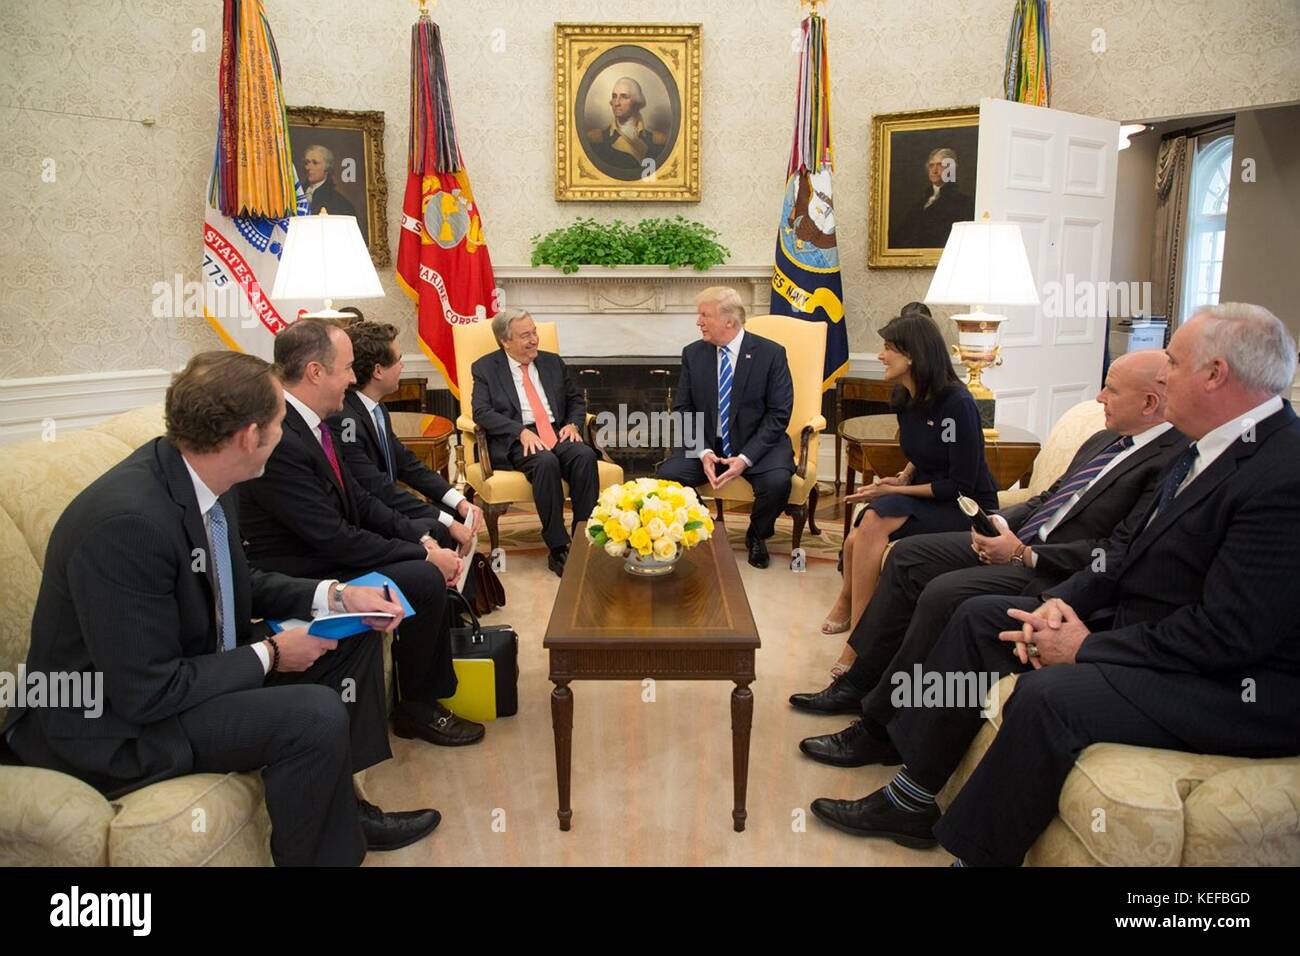 Us-Präsident Donald Trump bei einem Treffen mit UN-Generalsekretär Antonio Guterres in das Oval Office im Weißen Haus Oktober 20, 2017 in Washington, D.C. United States Botschafter bei der UNO nikki Haley schaut von rechts. Stockfoto